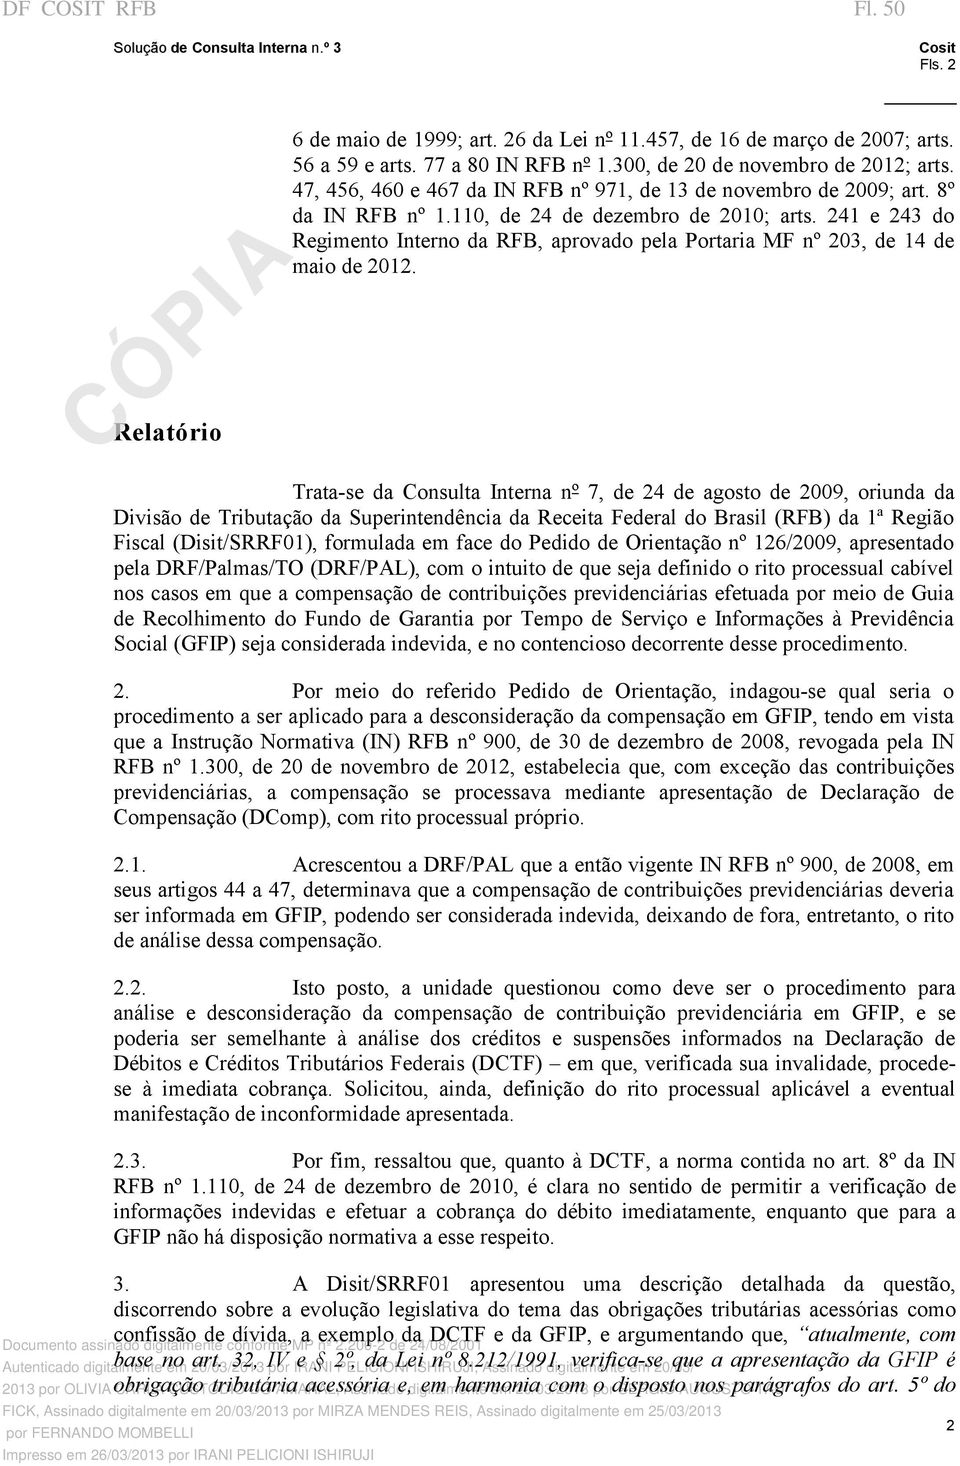 241 e 243 do Regimento Interno da RFB, aprovado pela Portaria MF nº 203, de 14 de maio de 2012.